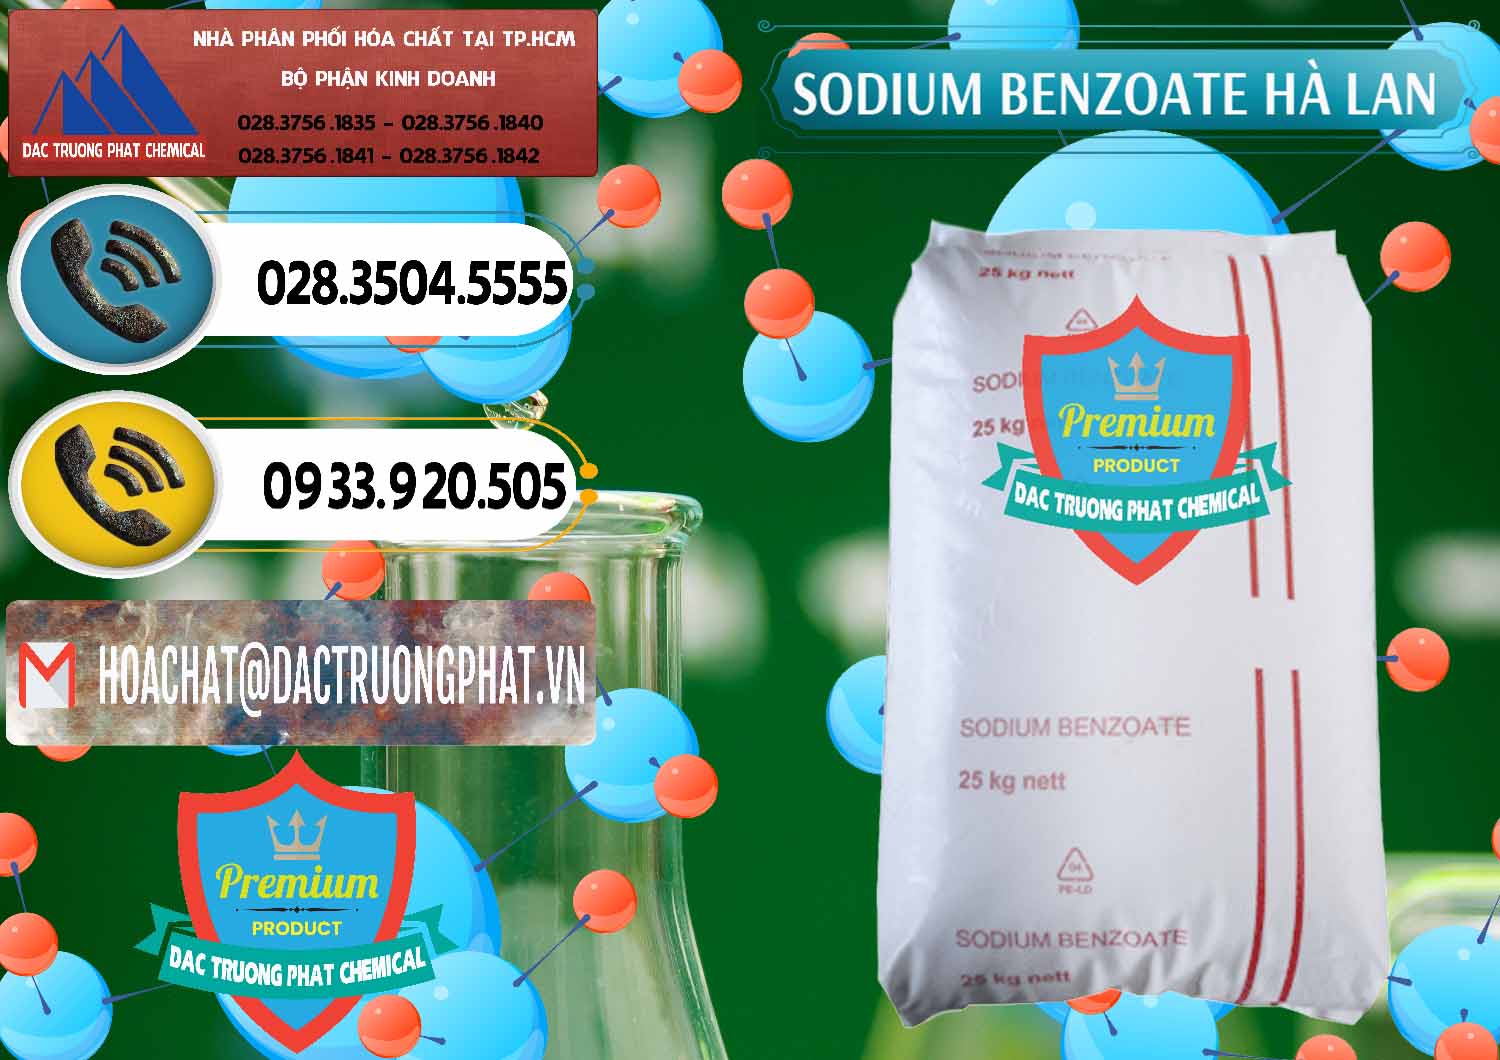 Chuyên kinh doanh & bán Sodium Benzoate - Mốc Bột Chữ Cam Hà Lan Netherlands - 0360 - Nhà phân phối - cung cấp hóa chất tại TP.HCM - hoachatdetnhuom.vn